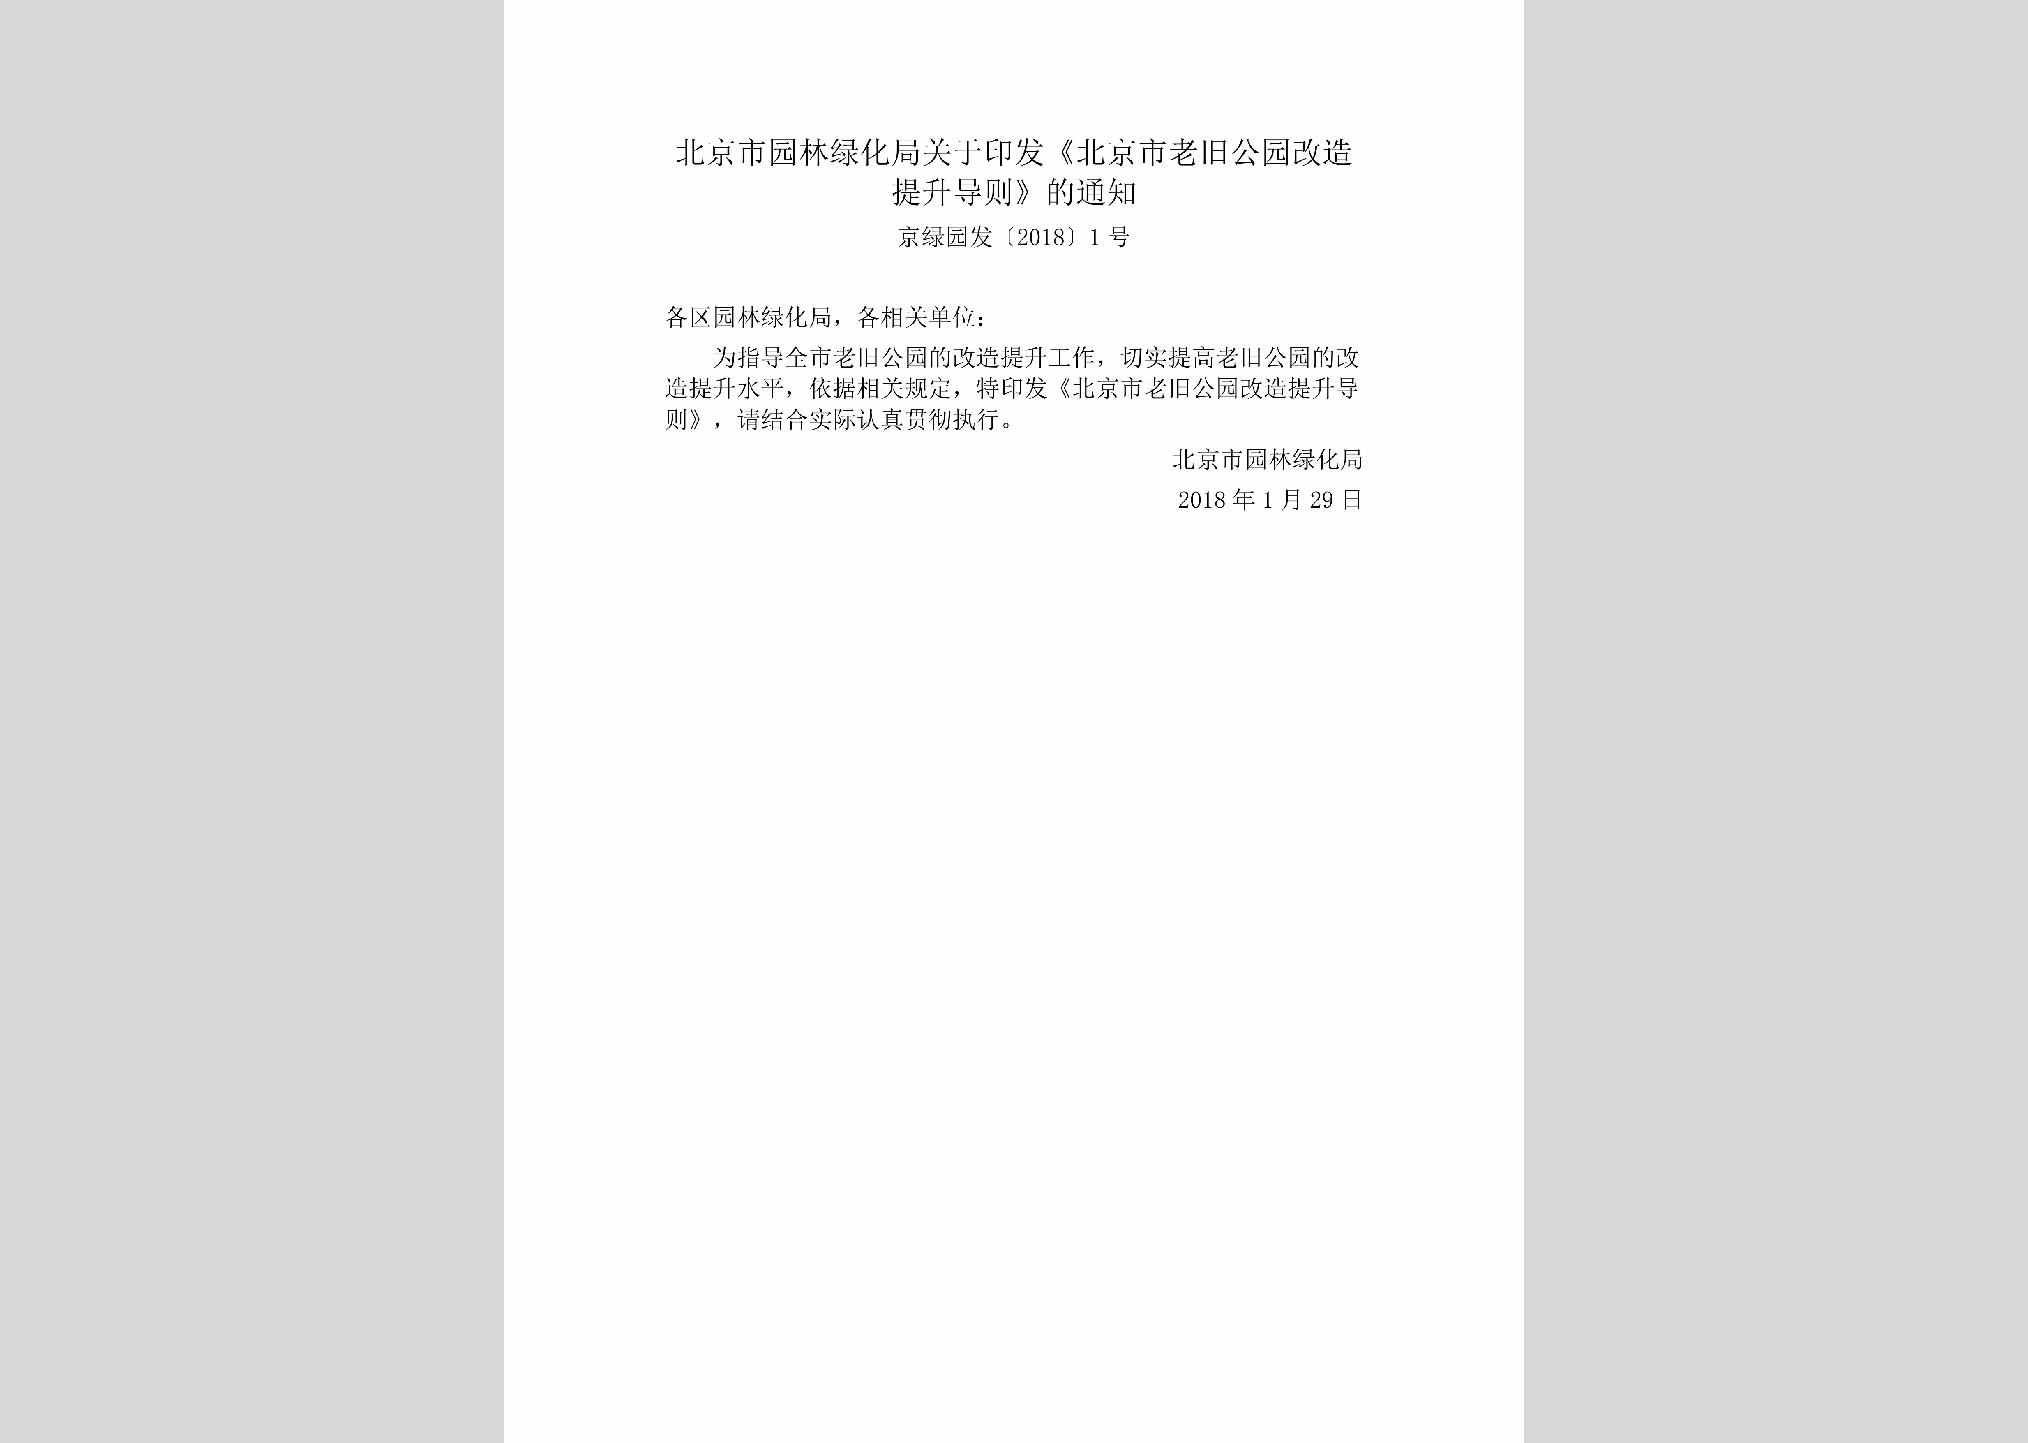 京绿园发[2018]1号：北京市园林绿化局关于印发《北京市老旧公园改造提升导则》的通知